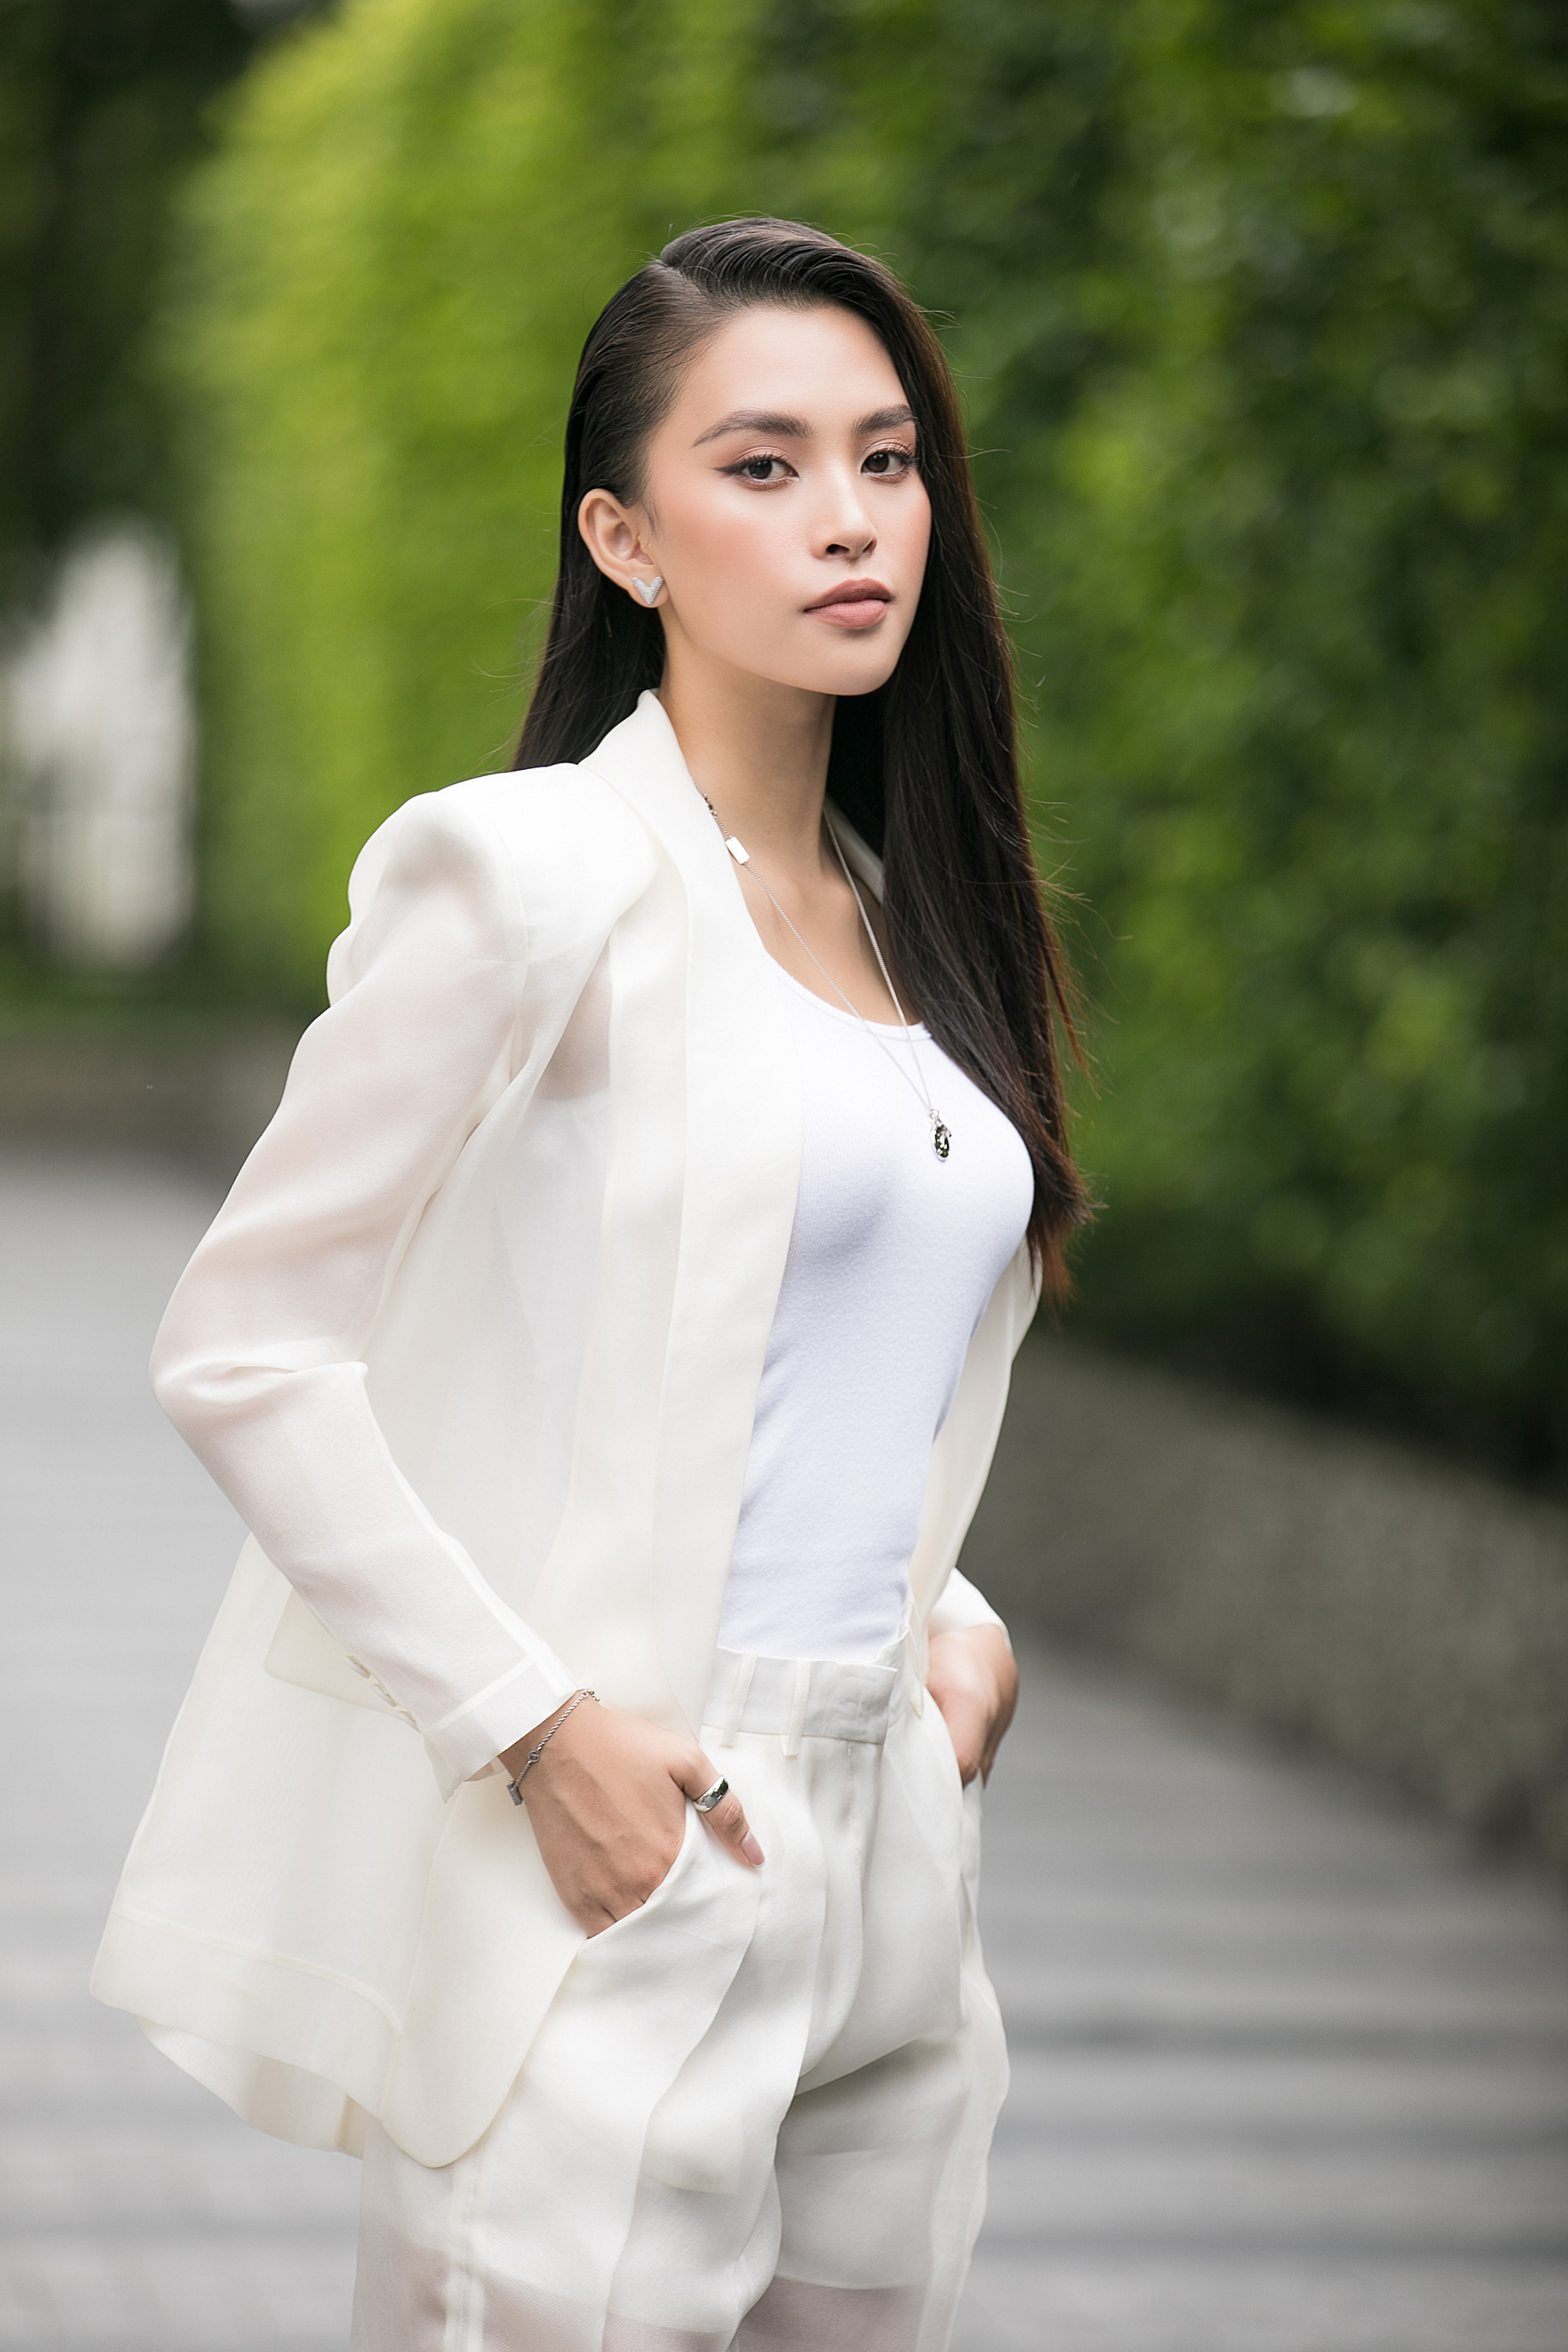 Đẹp lấn át thí sinh, Tiểu Vy trở về nơi đầu tiên ghi danh Hoa hậu Việt Nam - Ảnh 4